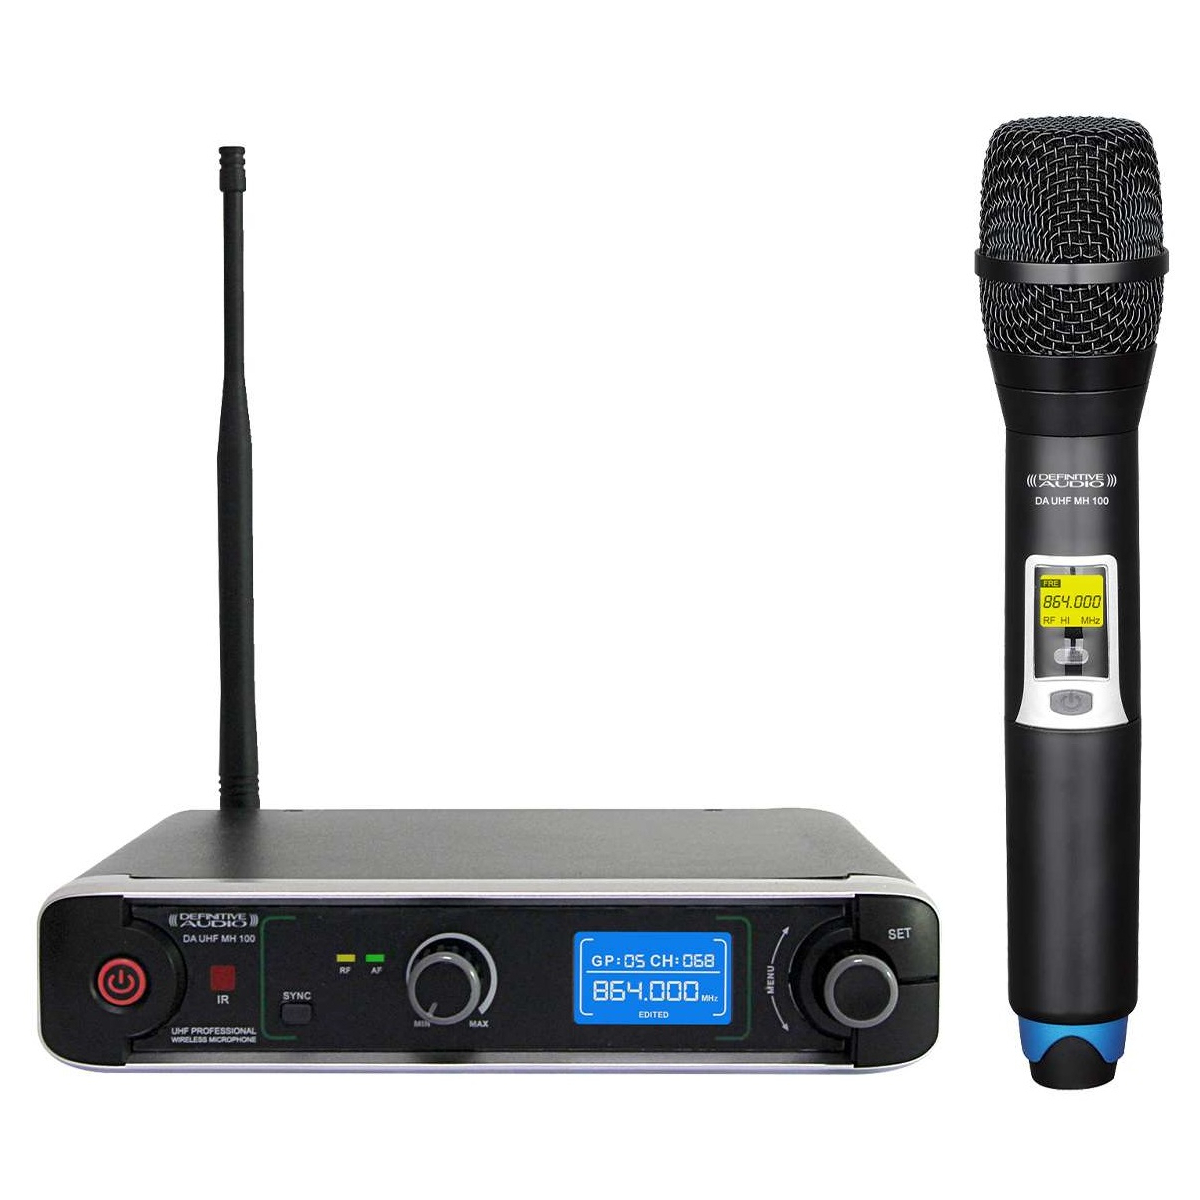 Micros chant sans fil - Definitive Audio - DA UHF MH 100